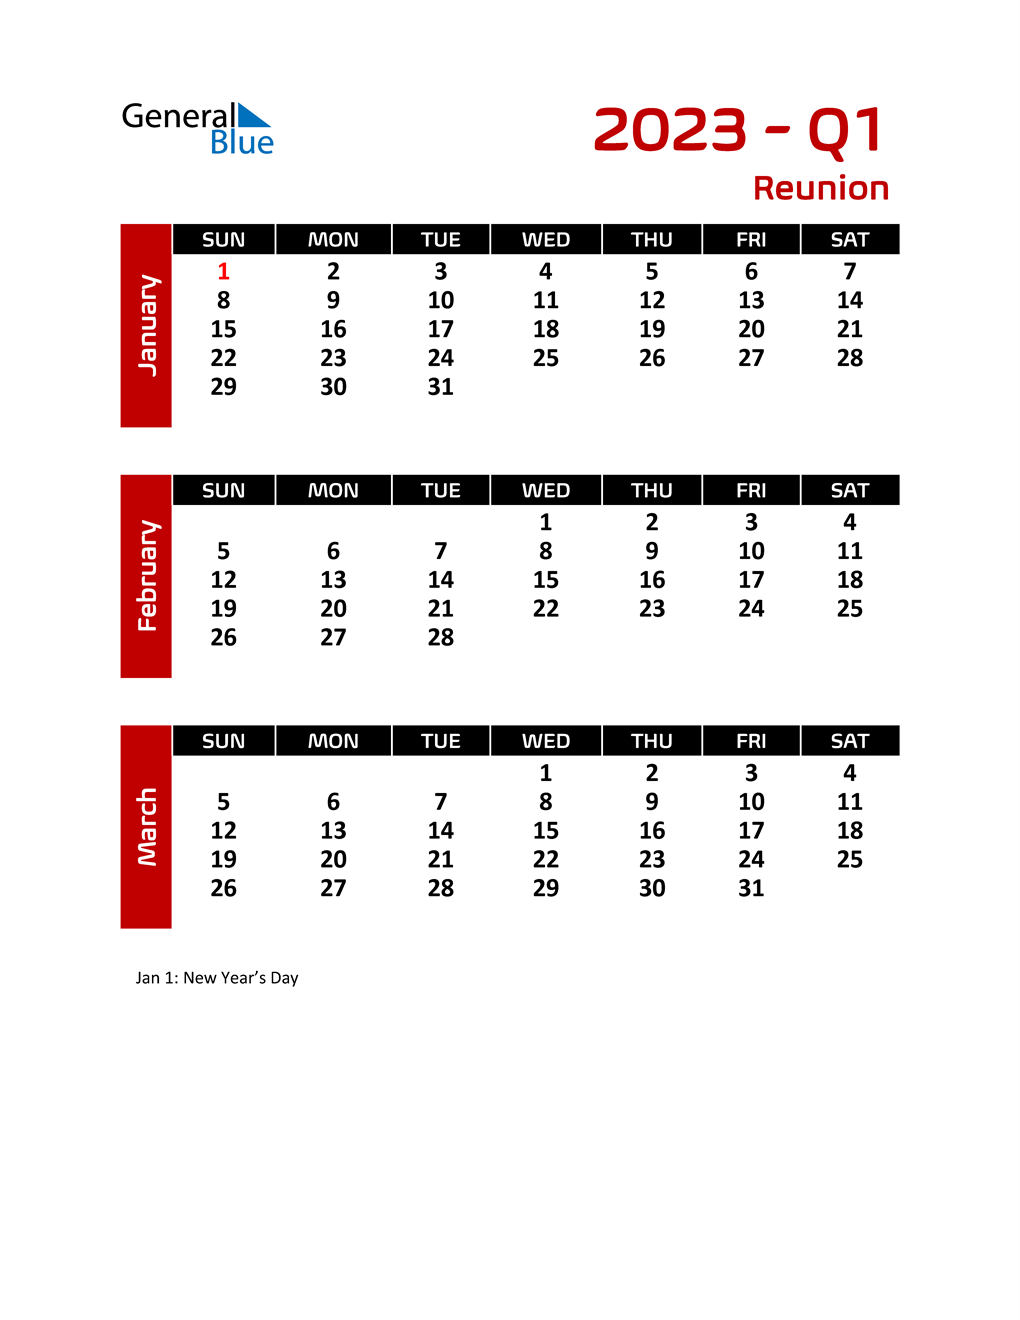 q1-2023-quarterly-calendar-with-reunion-holidays